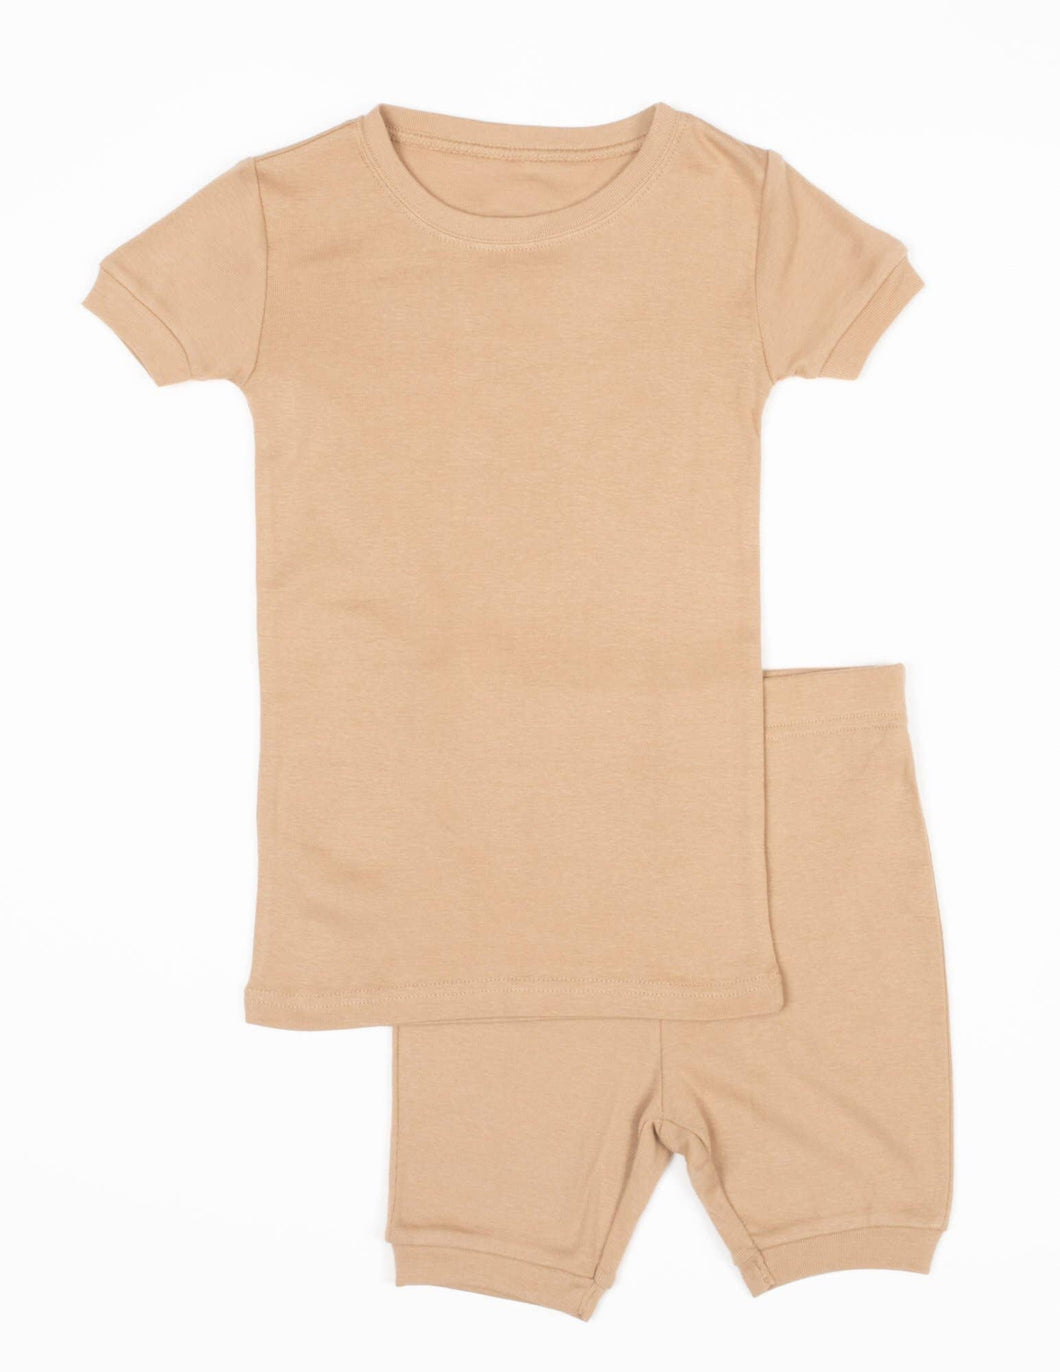 100% Breathable Cotton Short Pajamas set - Beige